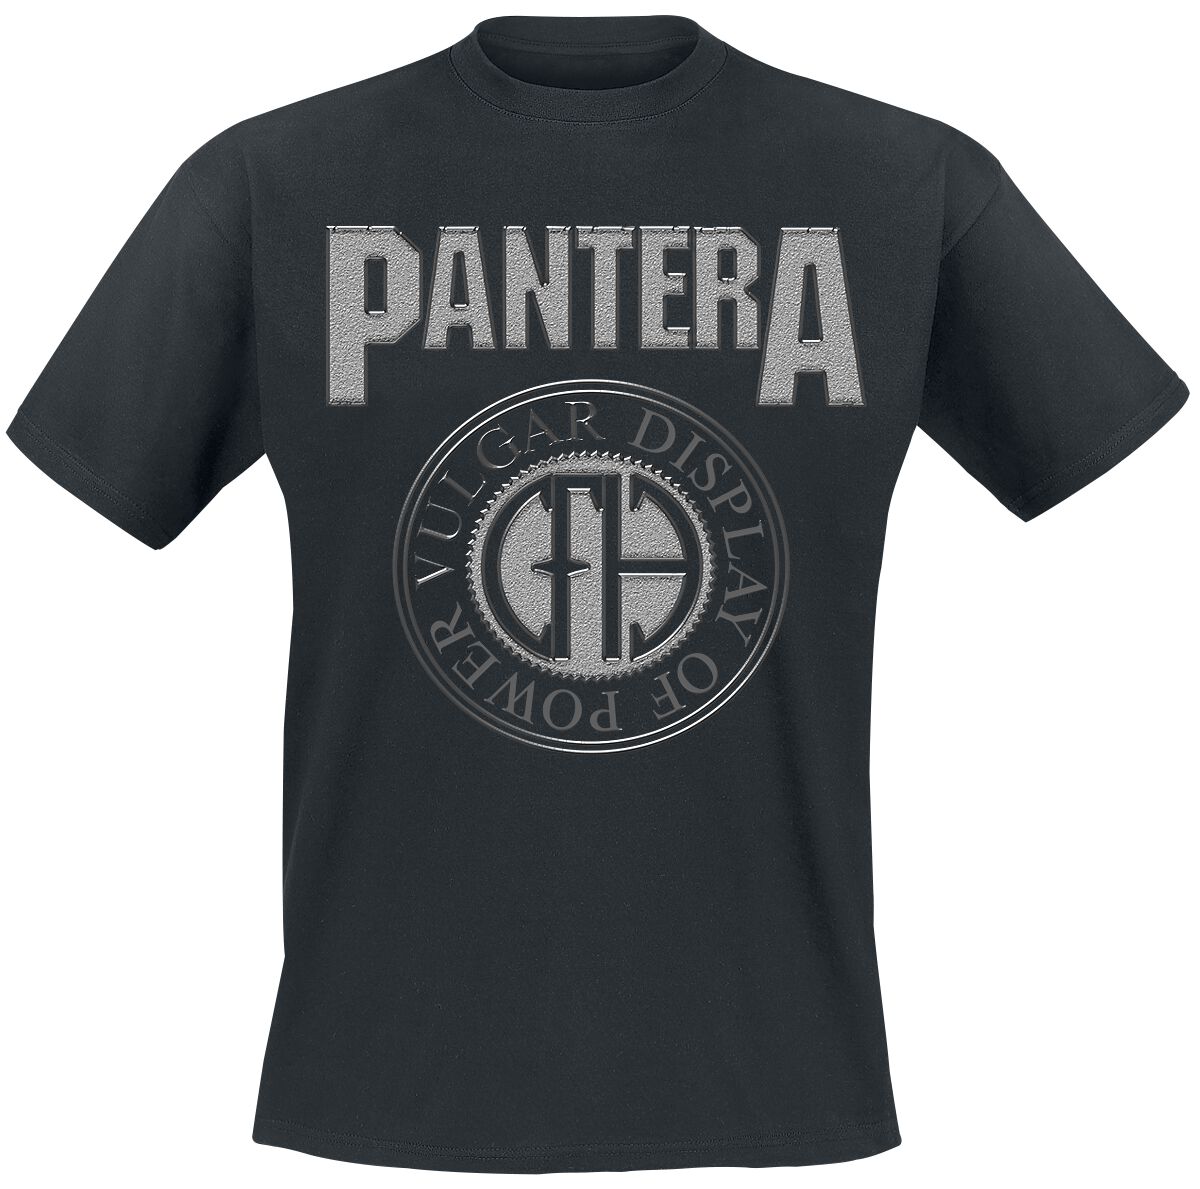 Pantera T-Shirt - S bis XL - für Männer - Größe XL - schwarz  - Lizenziertes Merchandise!